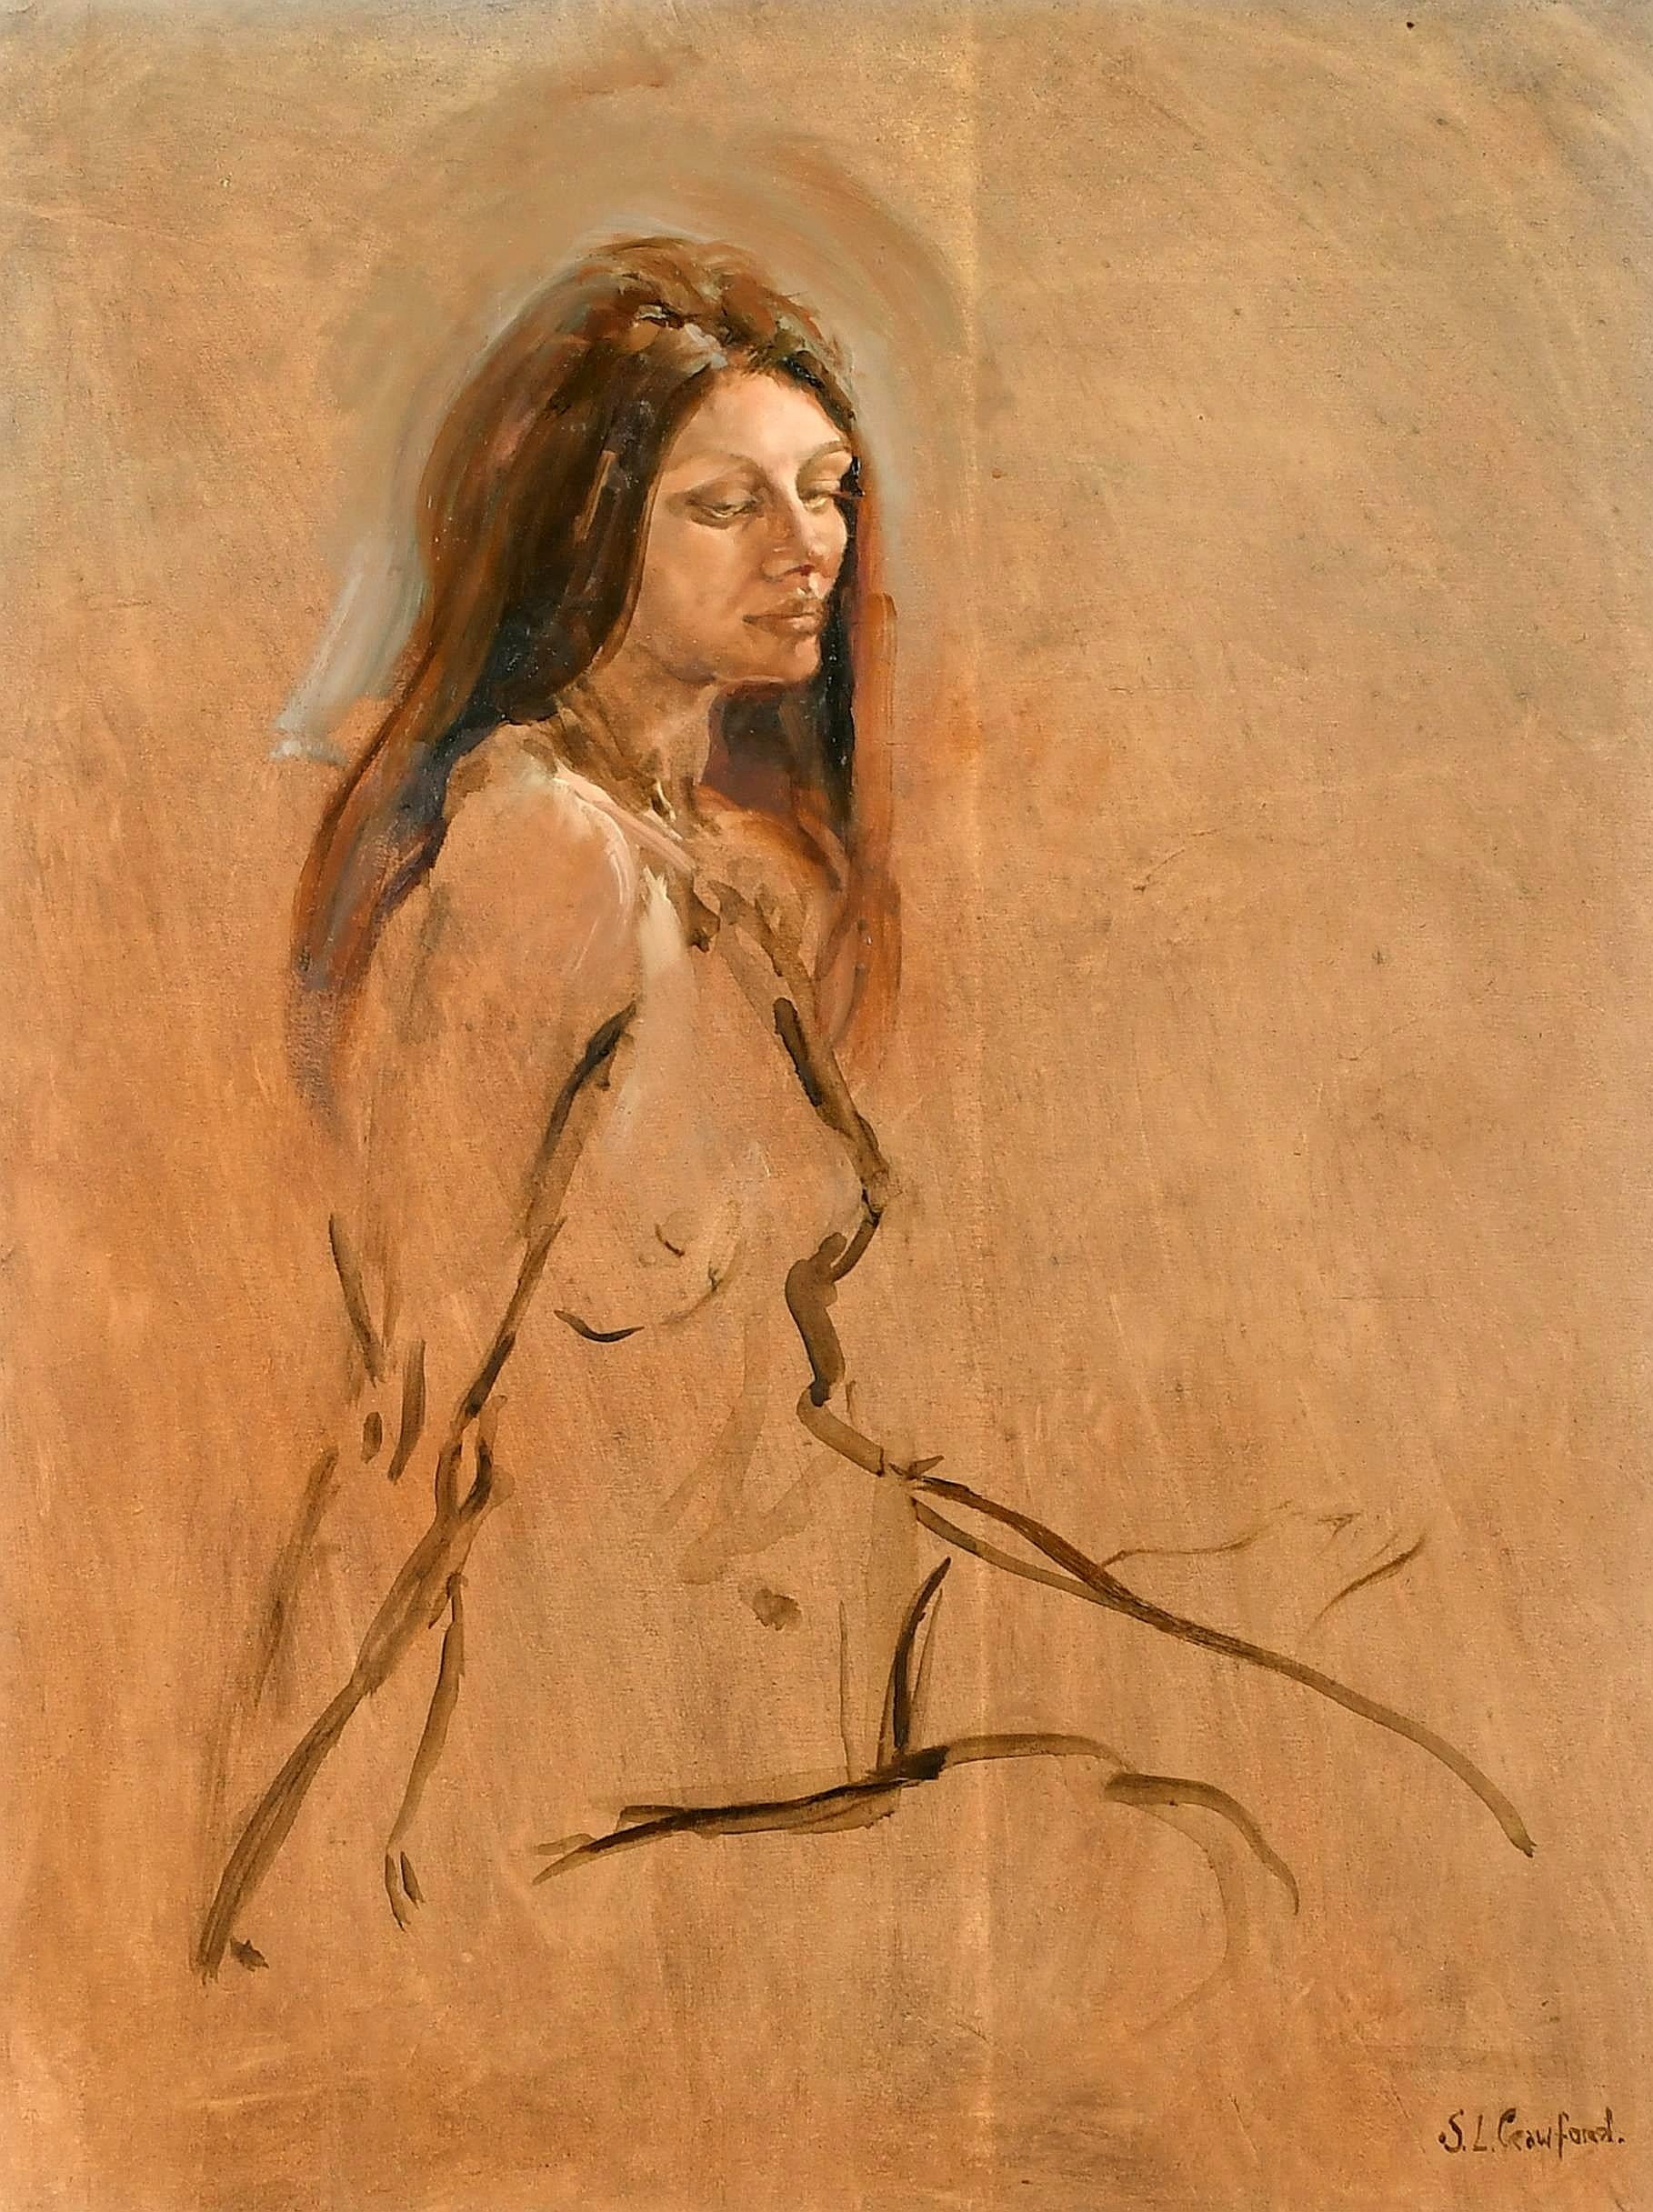 Akt sitzender Akt – feines Aktporträt einer Dame, modernes englisches Ölgemälde – Painting von Susan Crawford